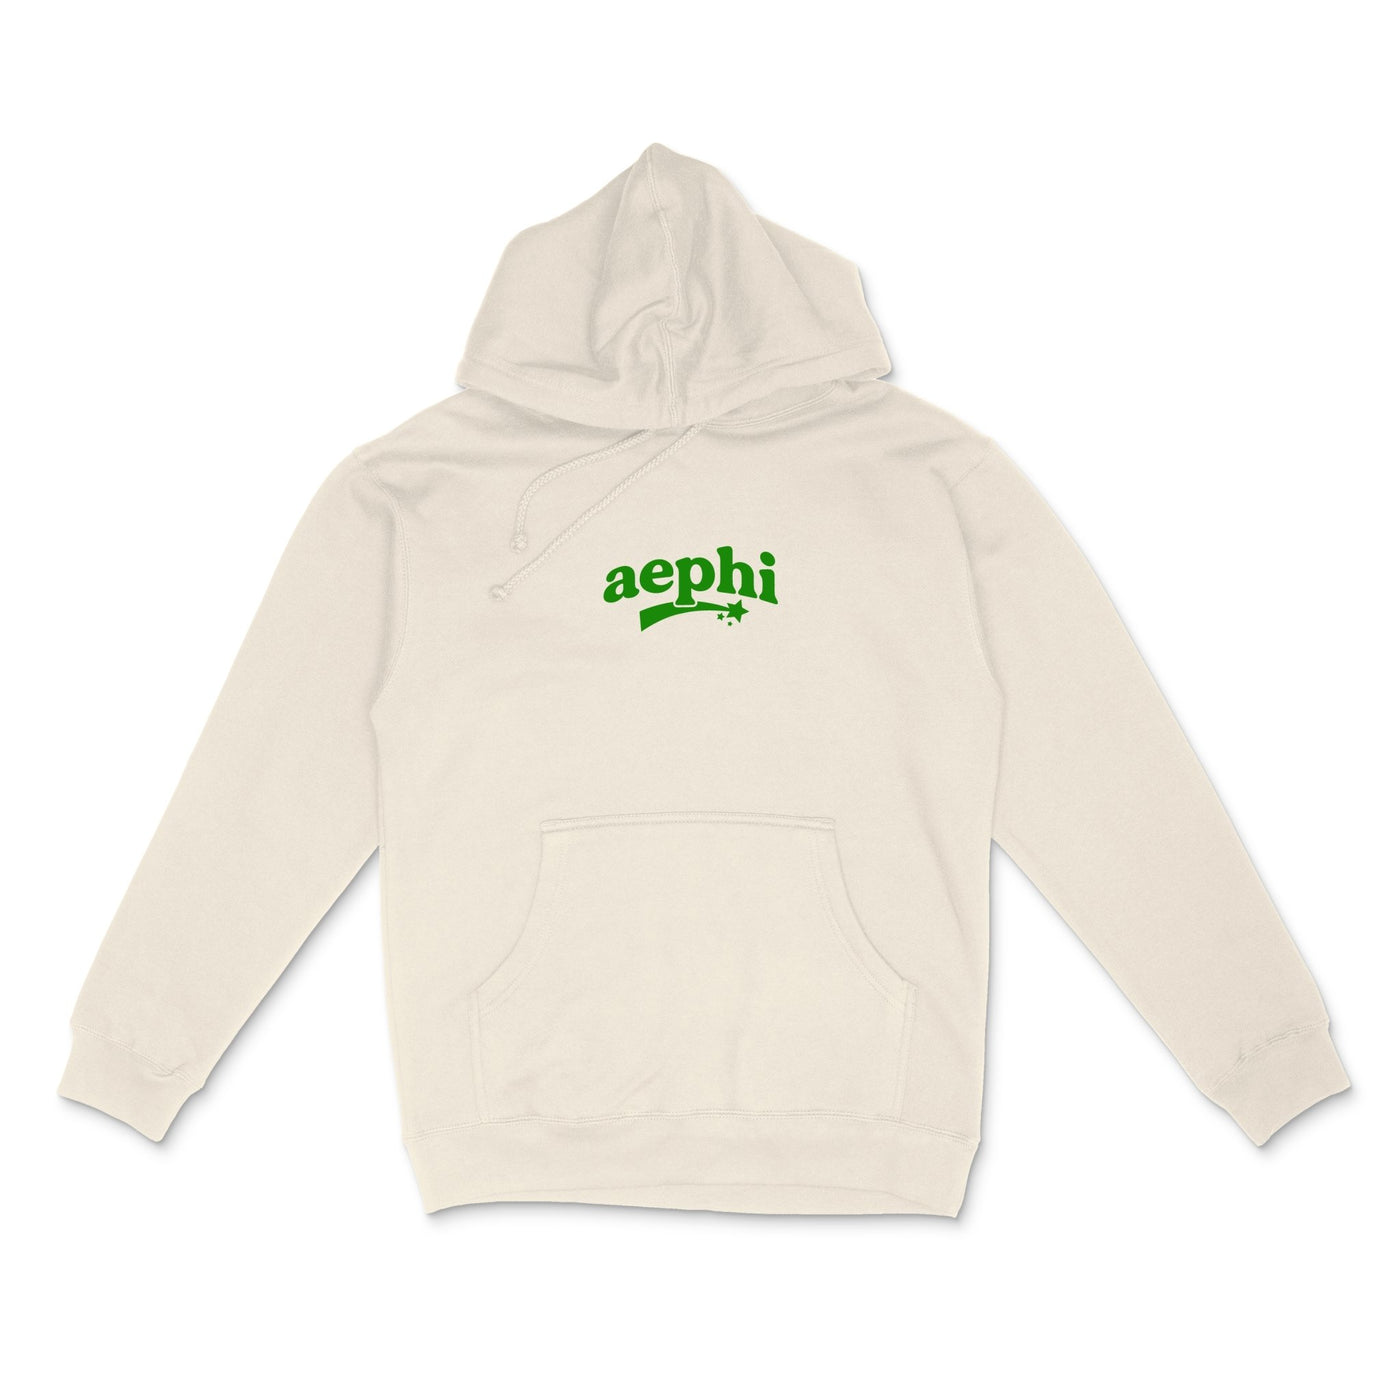 Alpha Epsilon Phi Planet Hoodie | Be Kind to the Planet Trendy Sorority Hoodie | Greek Life Sweatshirt | AEPhi comfy hoodie